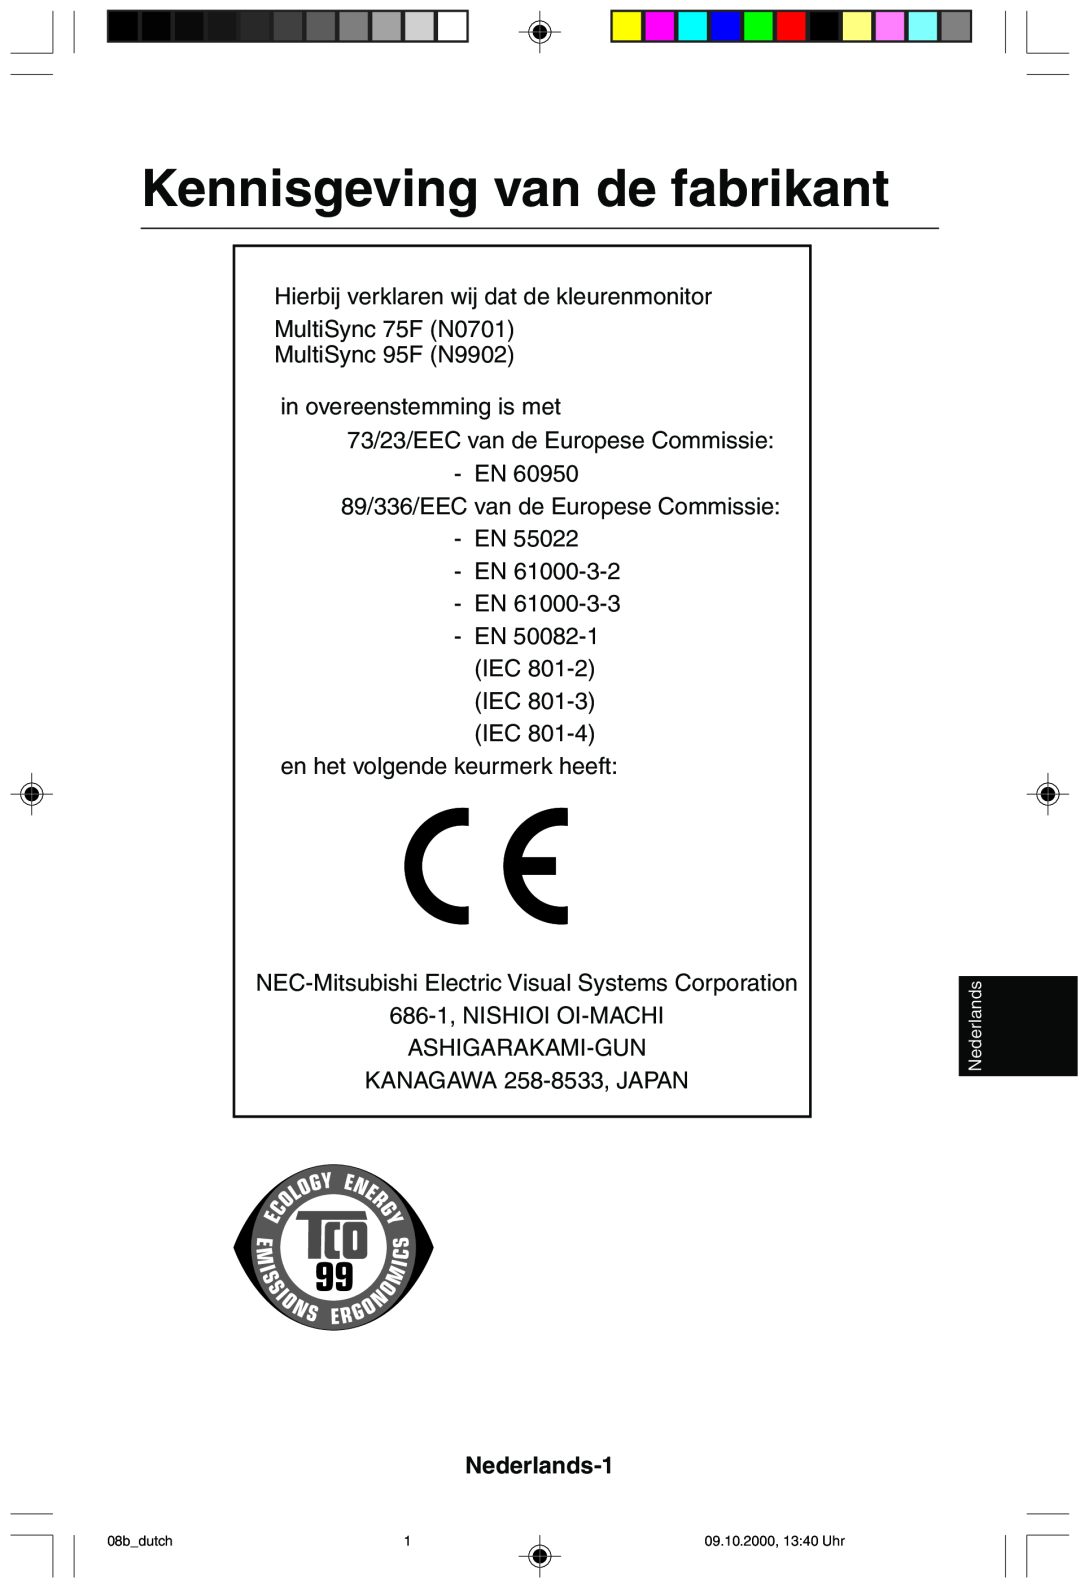 NEC 95F user manual Kennisgeving van de fabrikant, Nederlands-1 